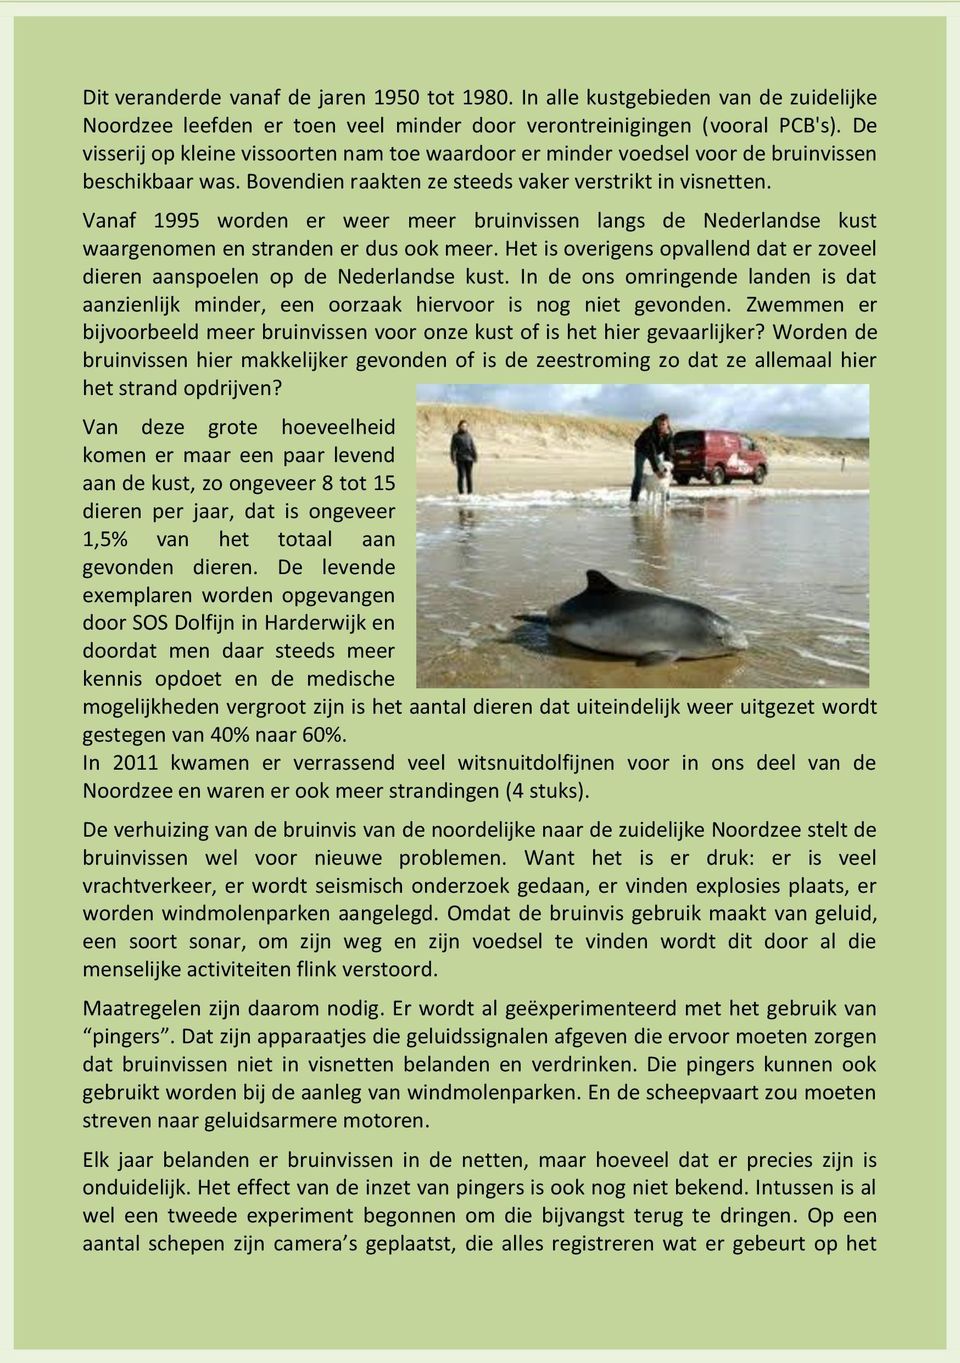 Vanaf 1995 worden er weer meer bruinvissen langs de Nederlandse kust waargenomen en stranden er dus ook meer. Het is overigens opvallend dat er zoveel dieren aanspoelen op de Nederlandse kust.